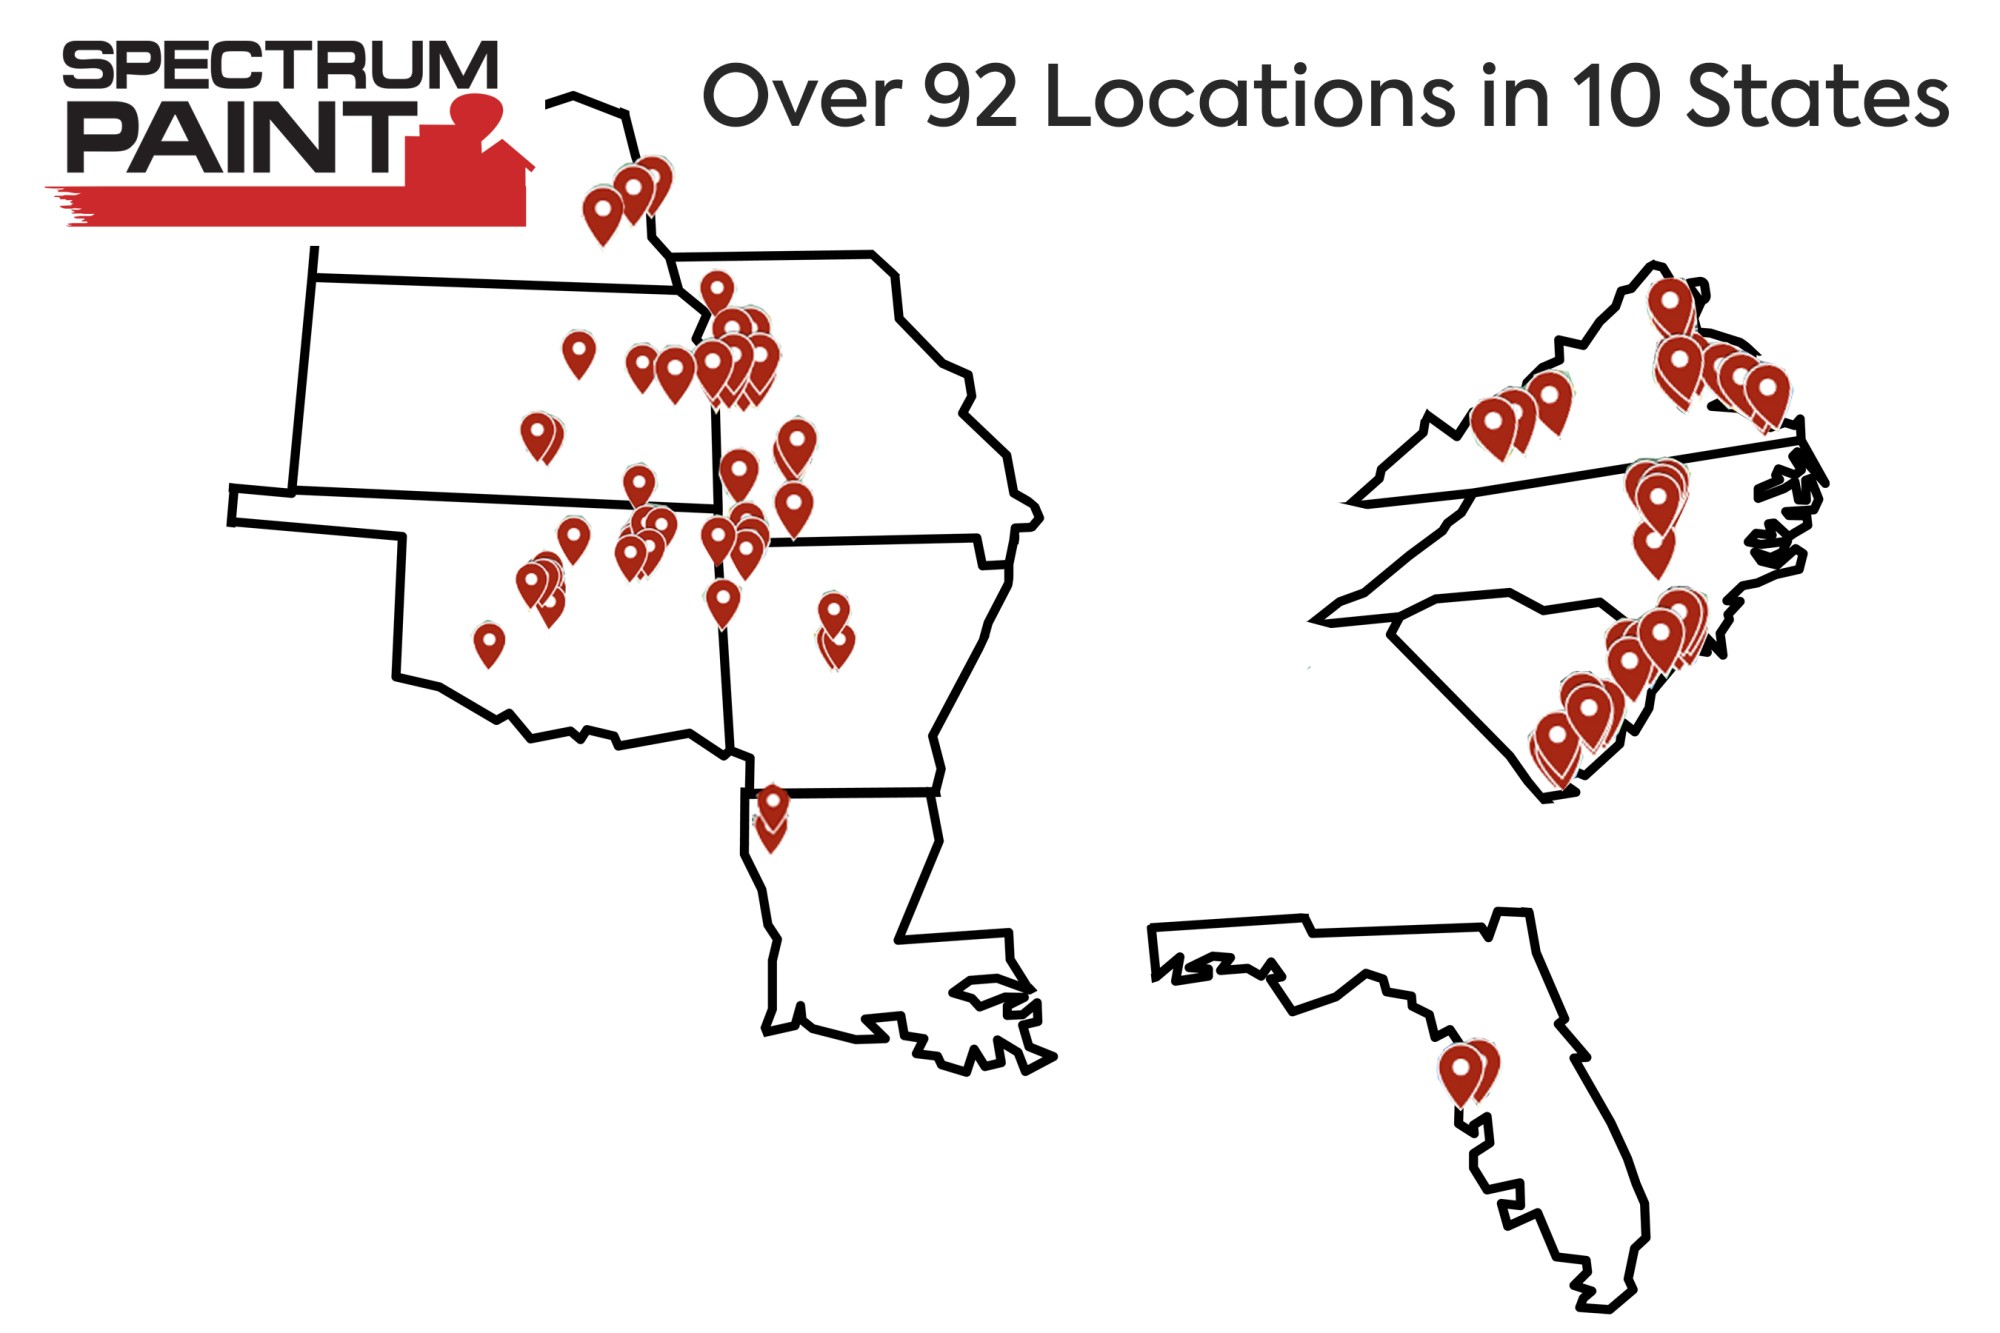 Spectrum locations map